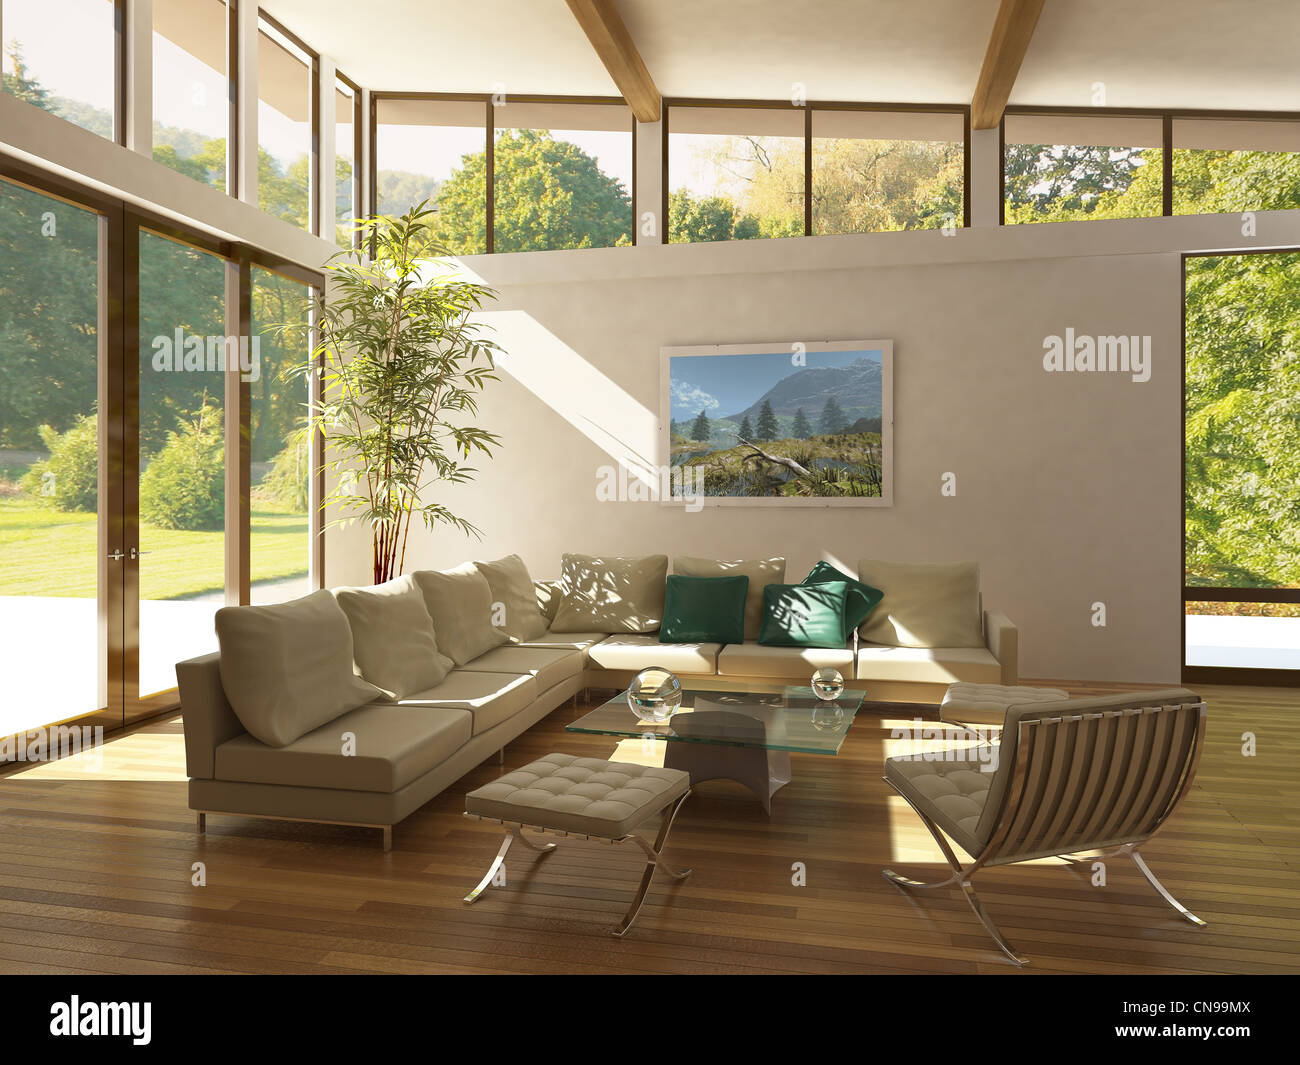 Salon moderne avec de grandes fenêtres, plancher en bois et des plantes. Le vert et les arbres à l'extérieur. Banque D'Images